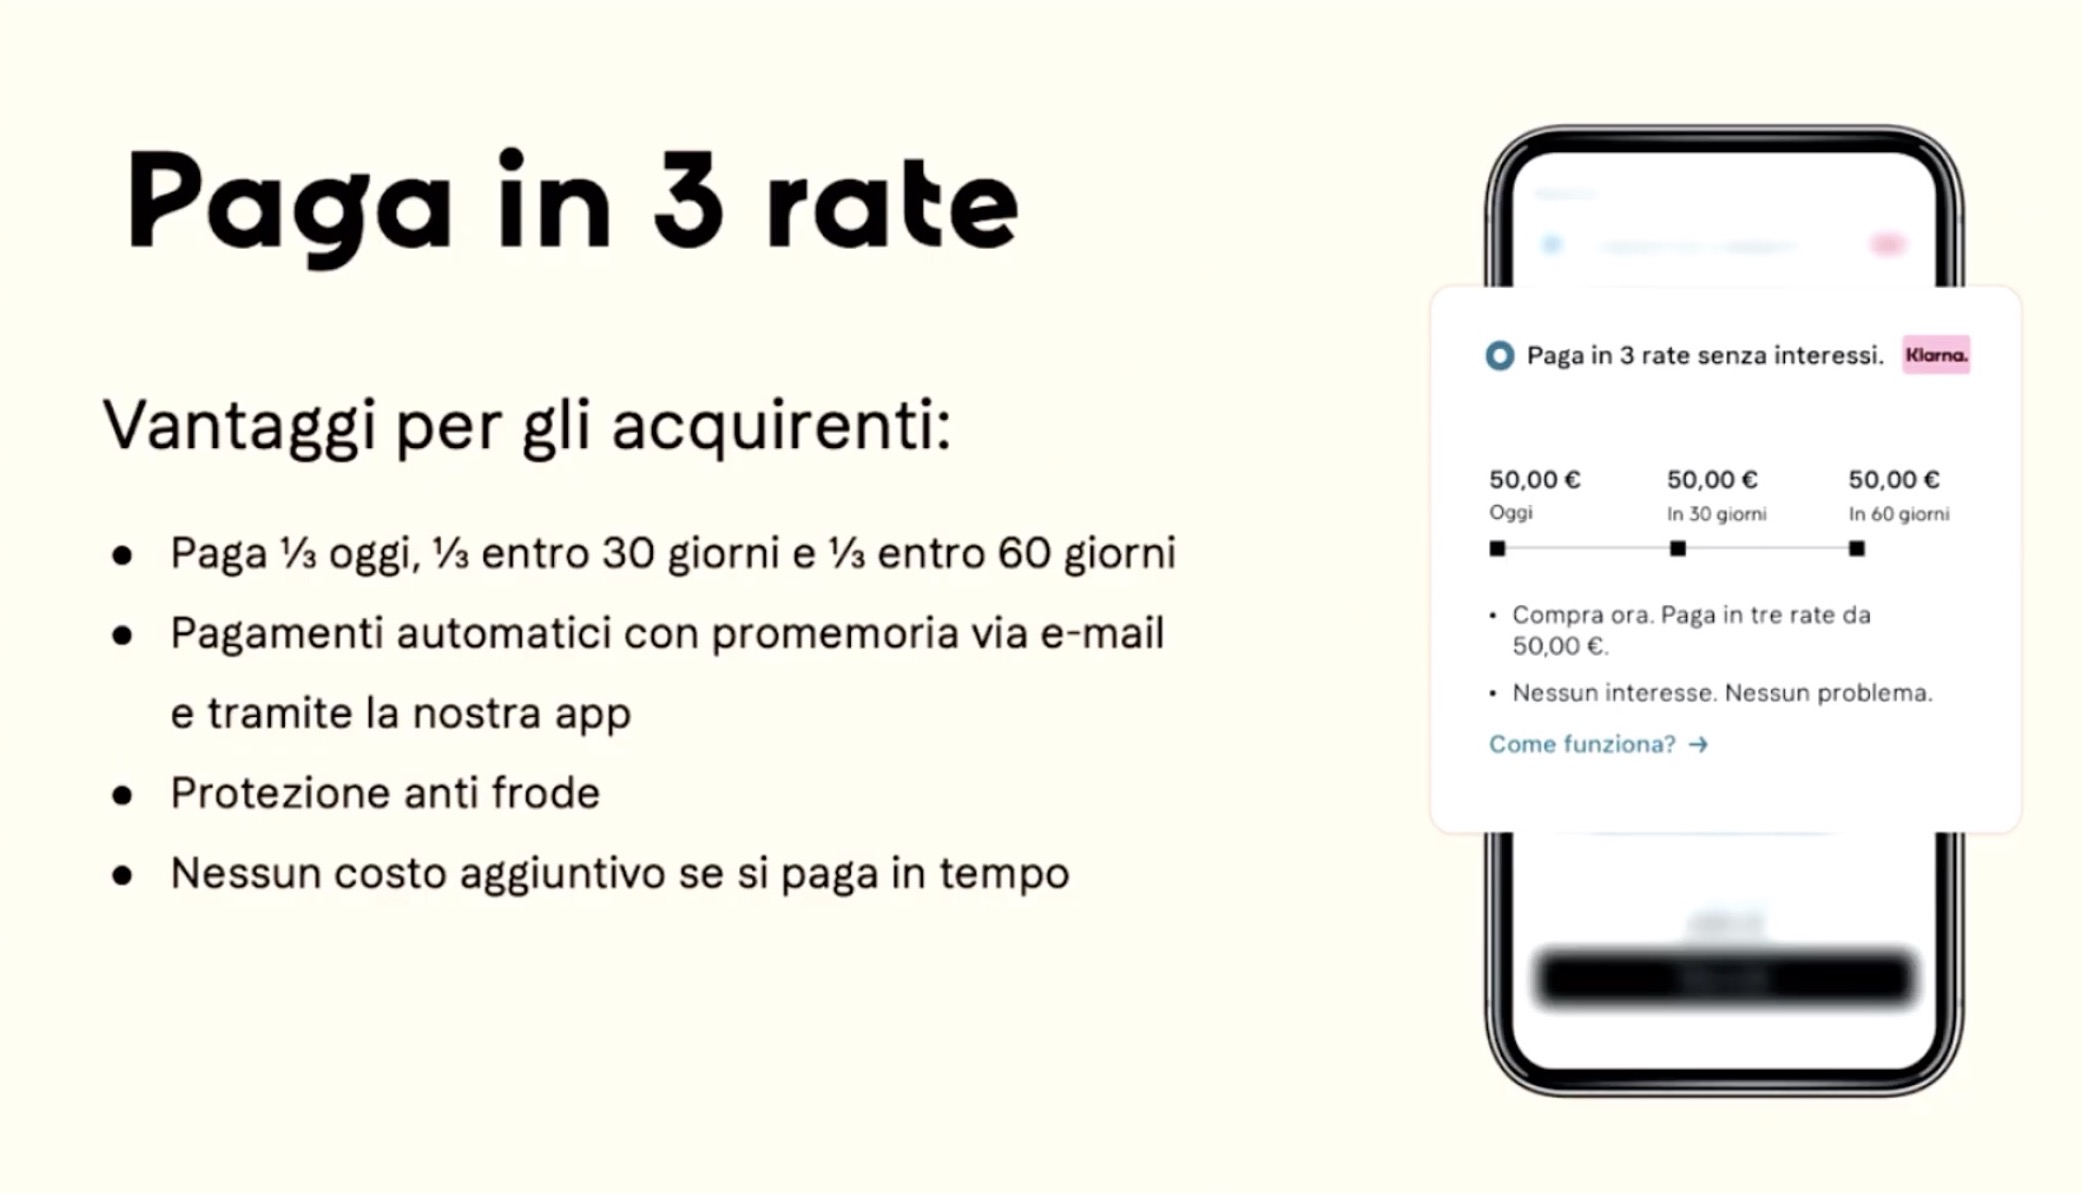 Klarna lancia il servizio “Paga in 3 rate” per lo shopping online in Italia